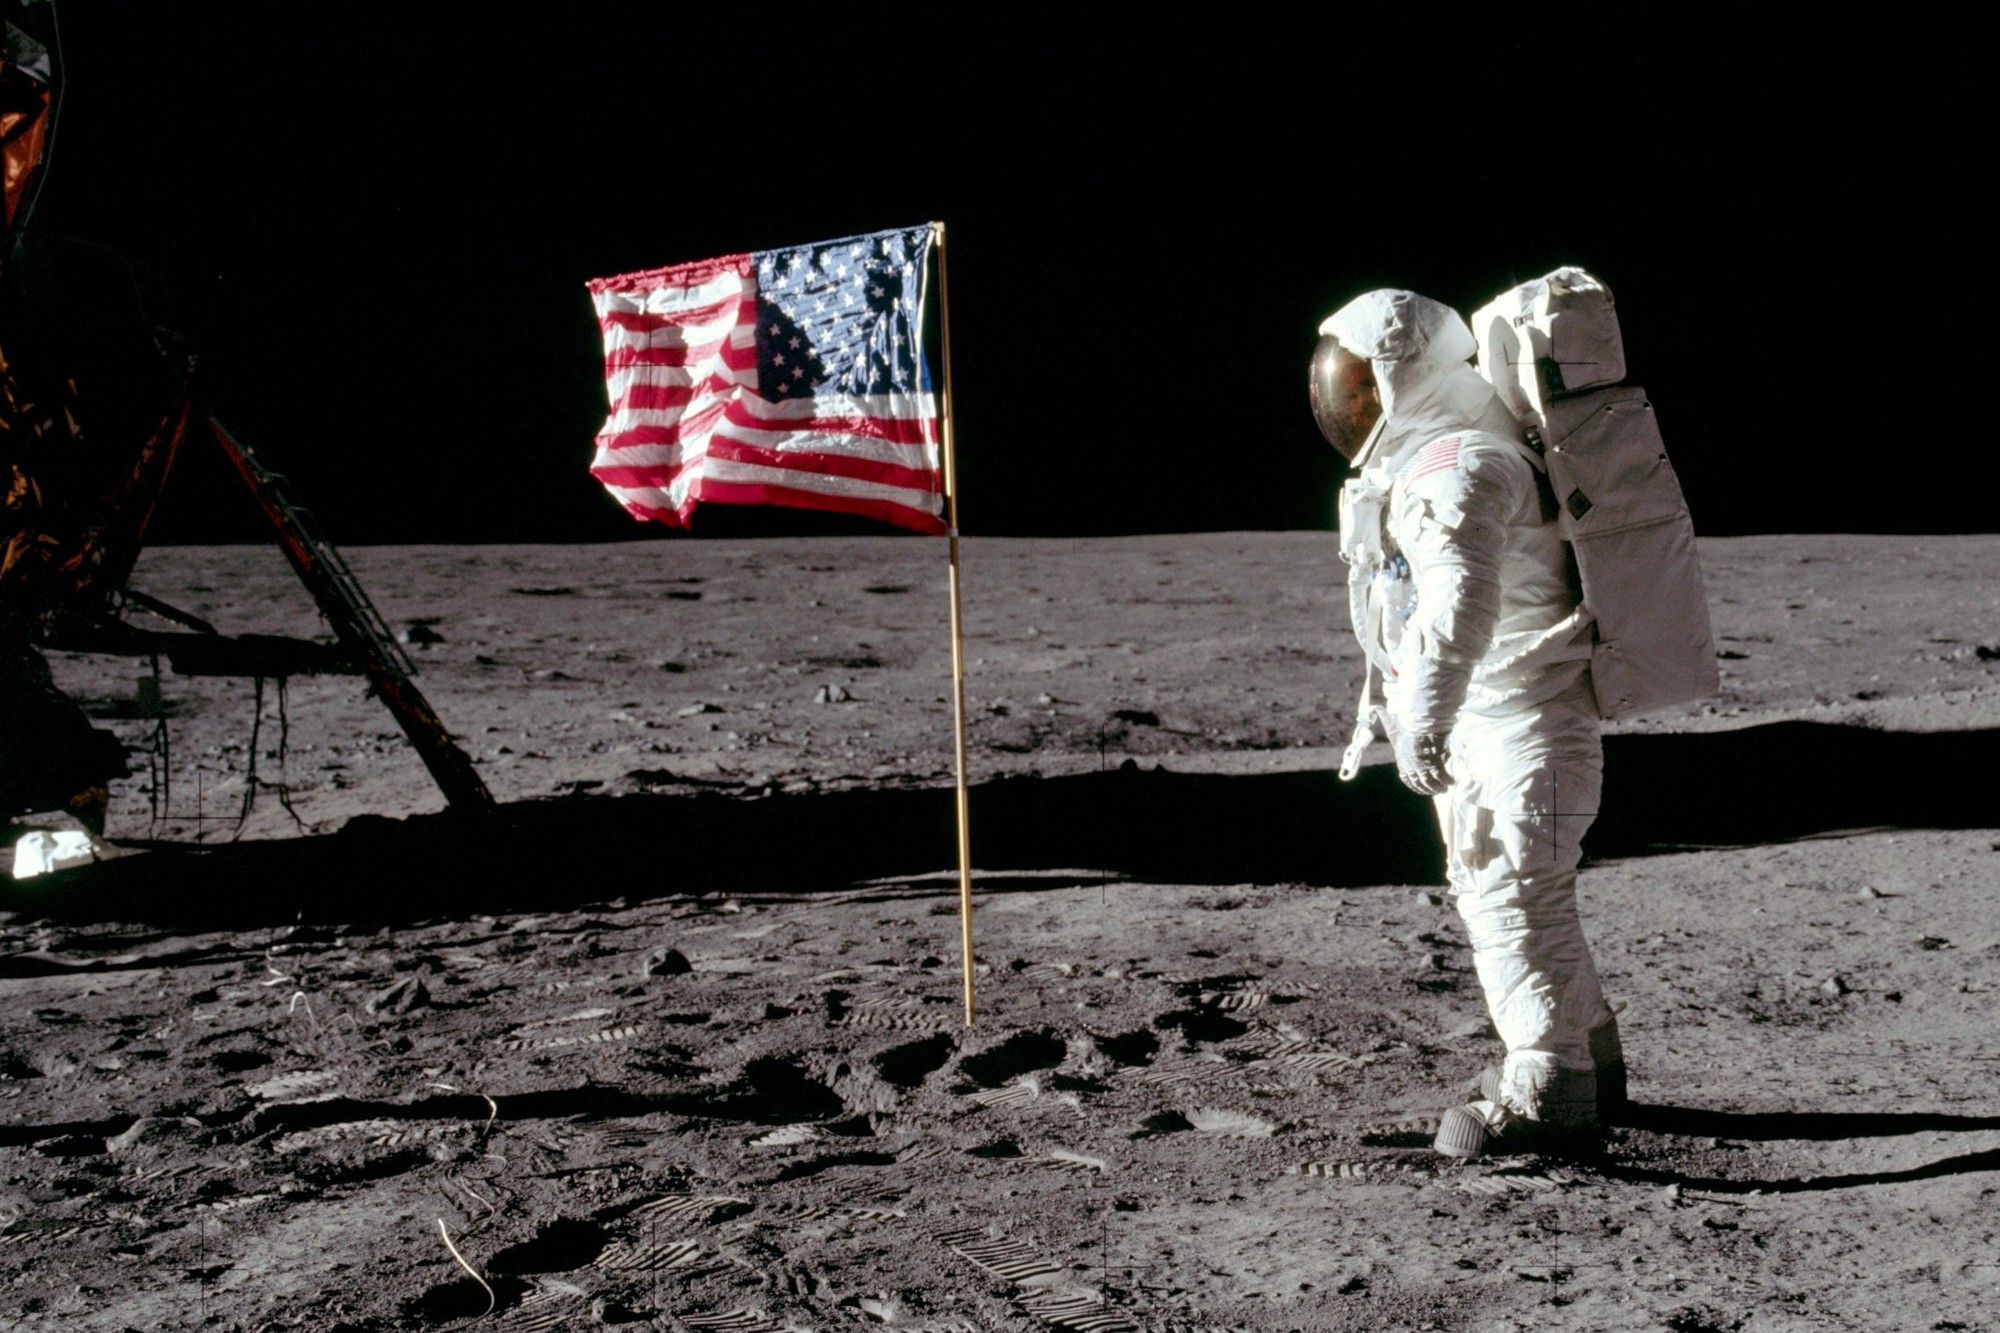 Neil Armstrong/NASA